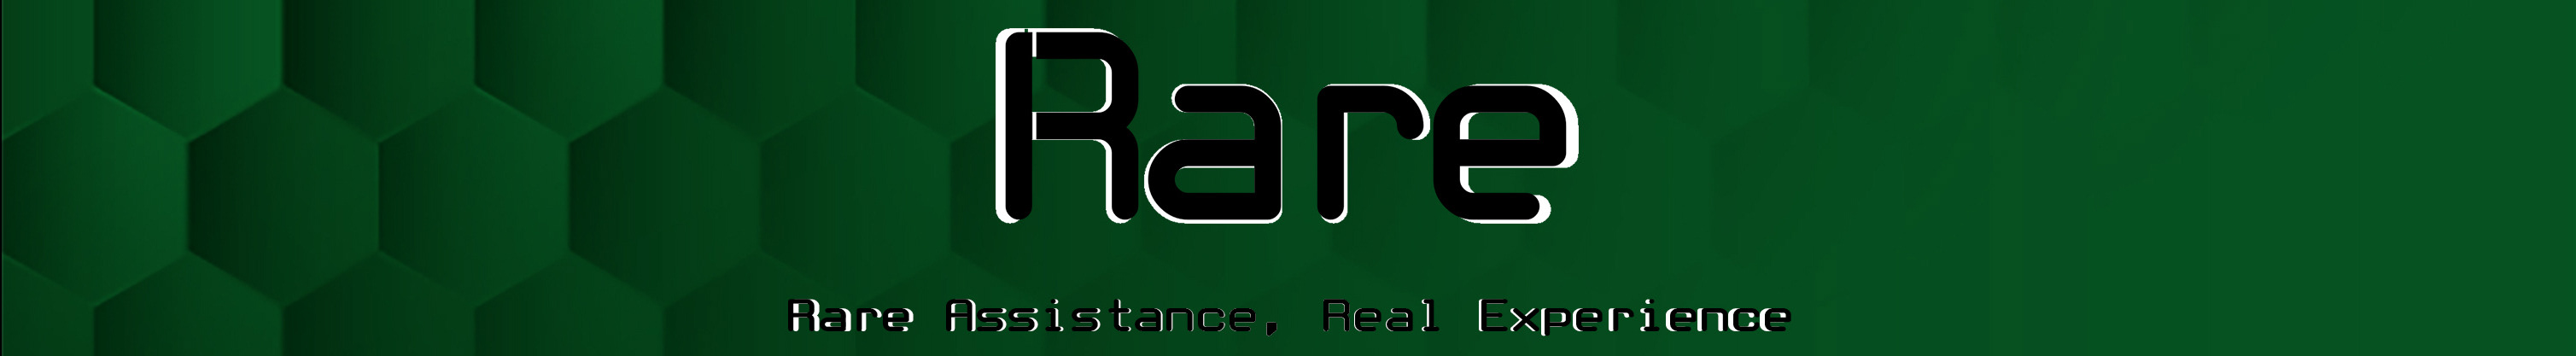 Rare 360's profile banner